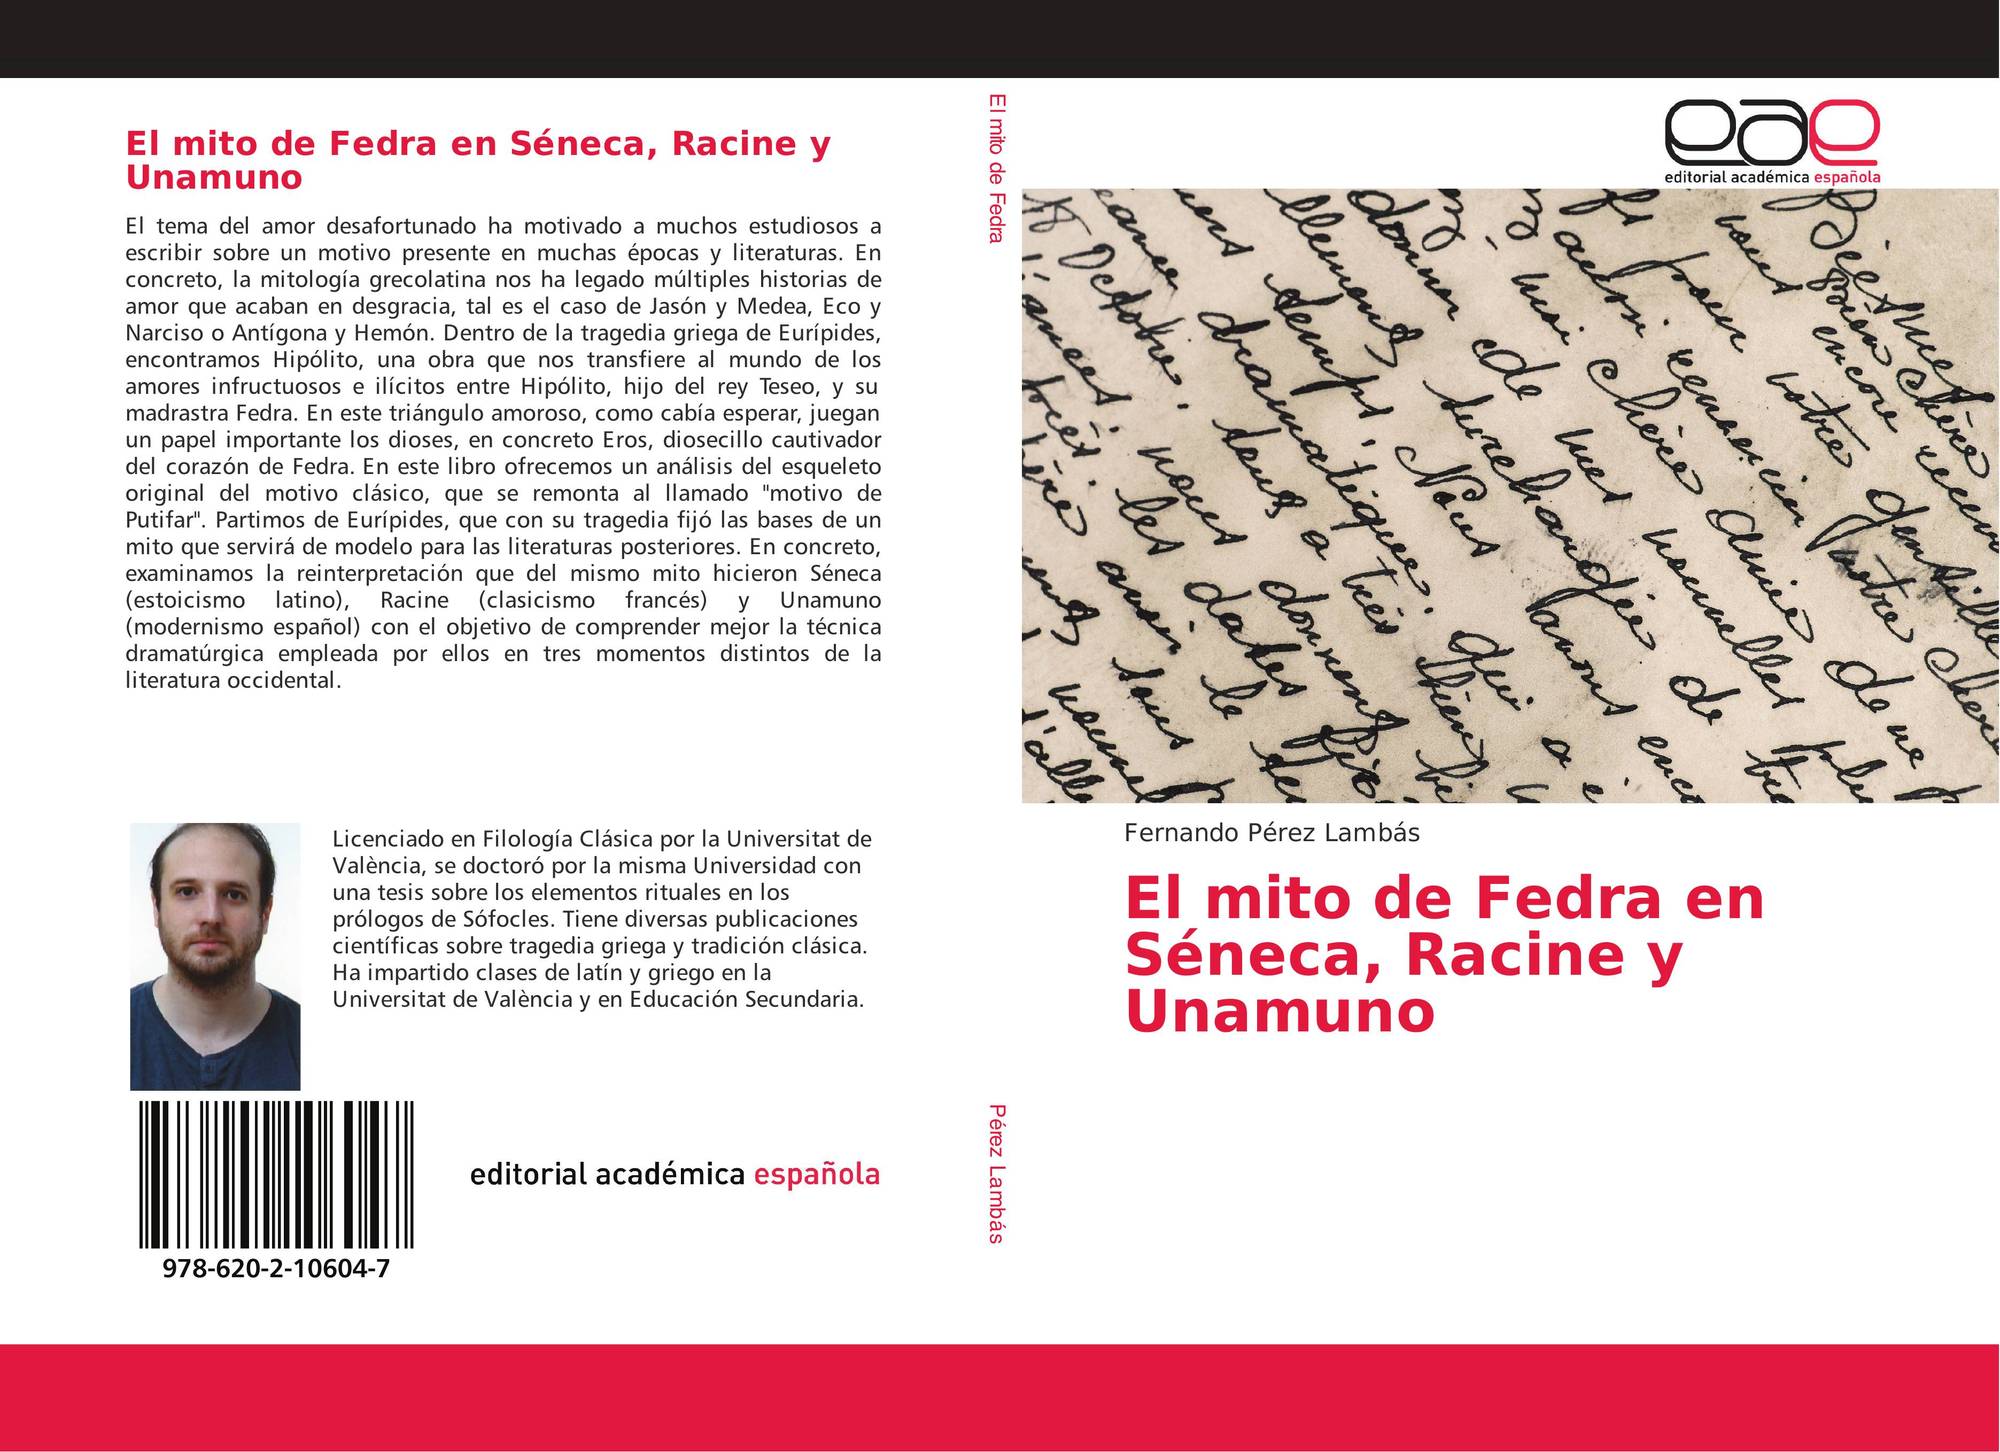 Imagen de portada del libro El mito de Fedra en Séneca, Racine y Unamuno